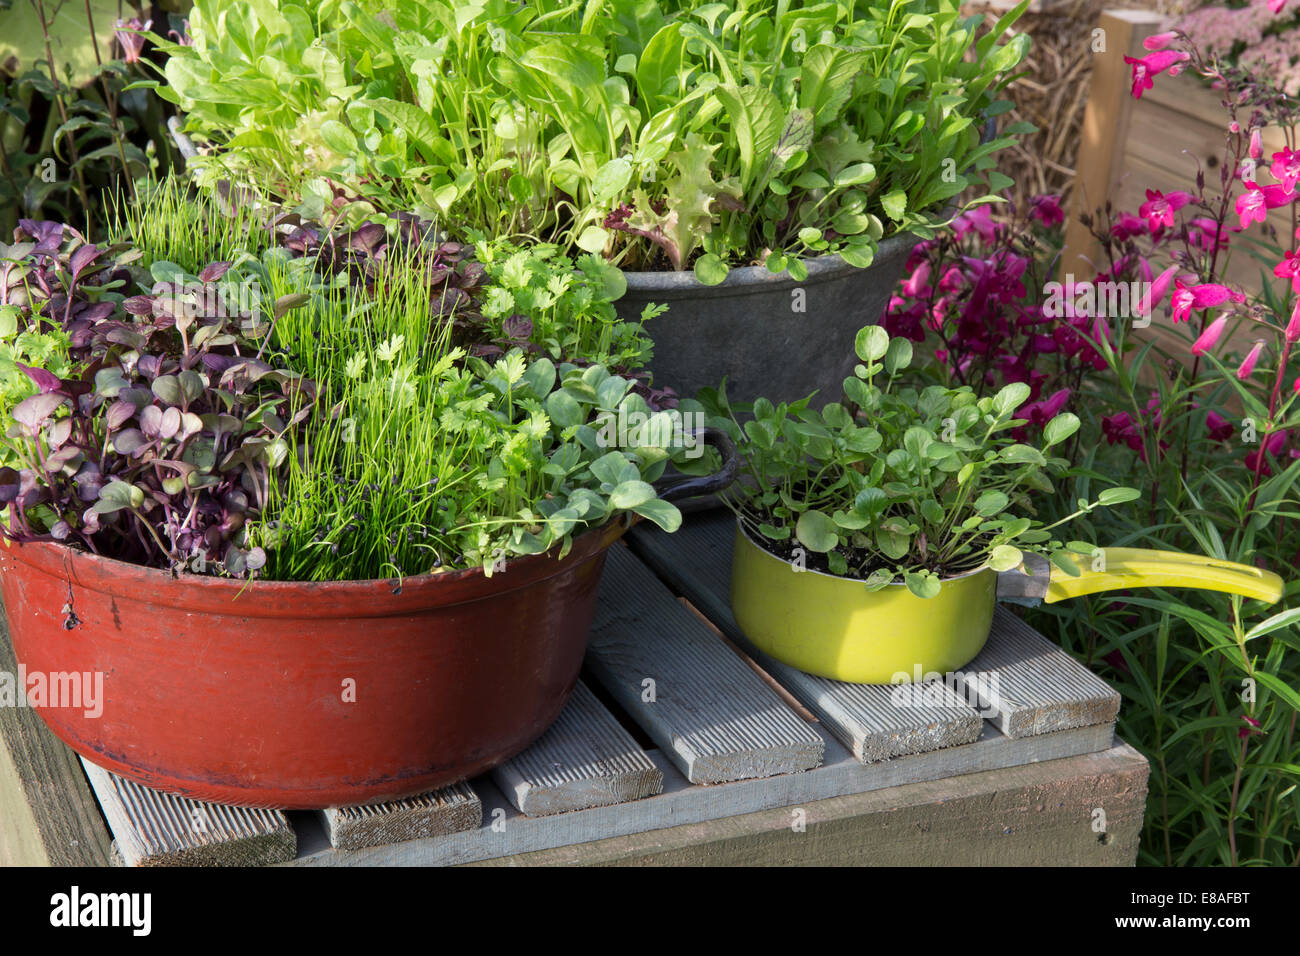 Küche Garten orientalischer Salat Pflanzen Mikrogrün wachsen in ungewöhnlichen Töpfen Behältern Land Kresse wächst in Topf Sommersalat Mischung Salat Blätter UK Stockfoto